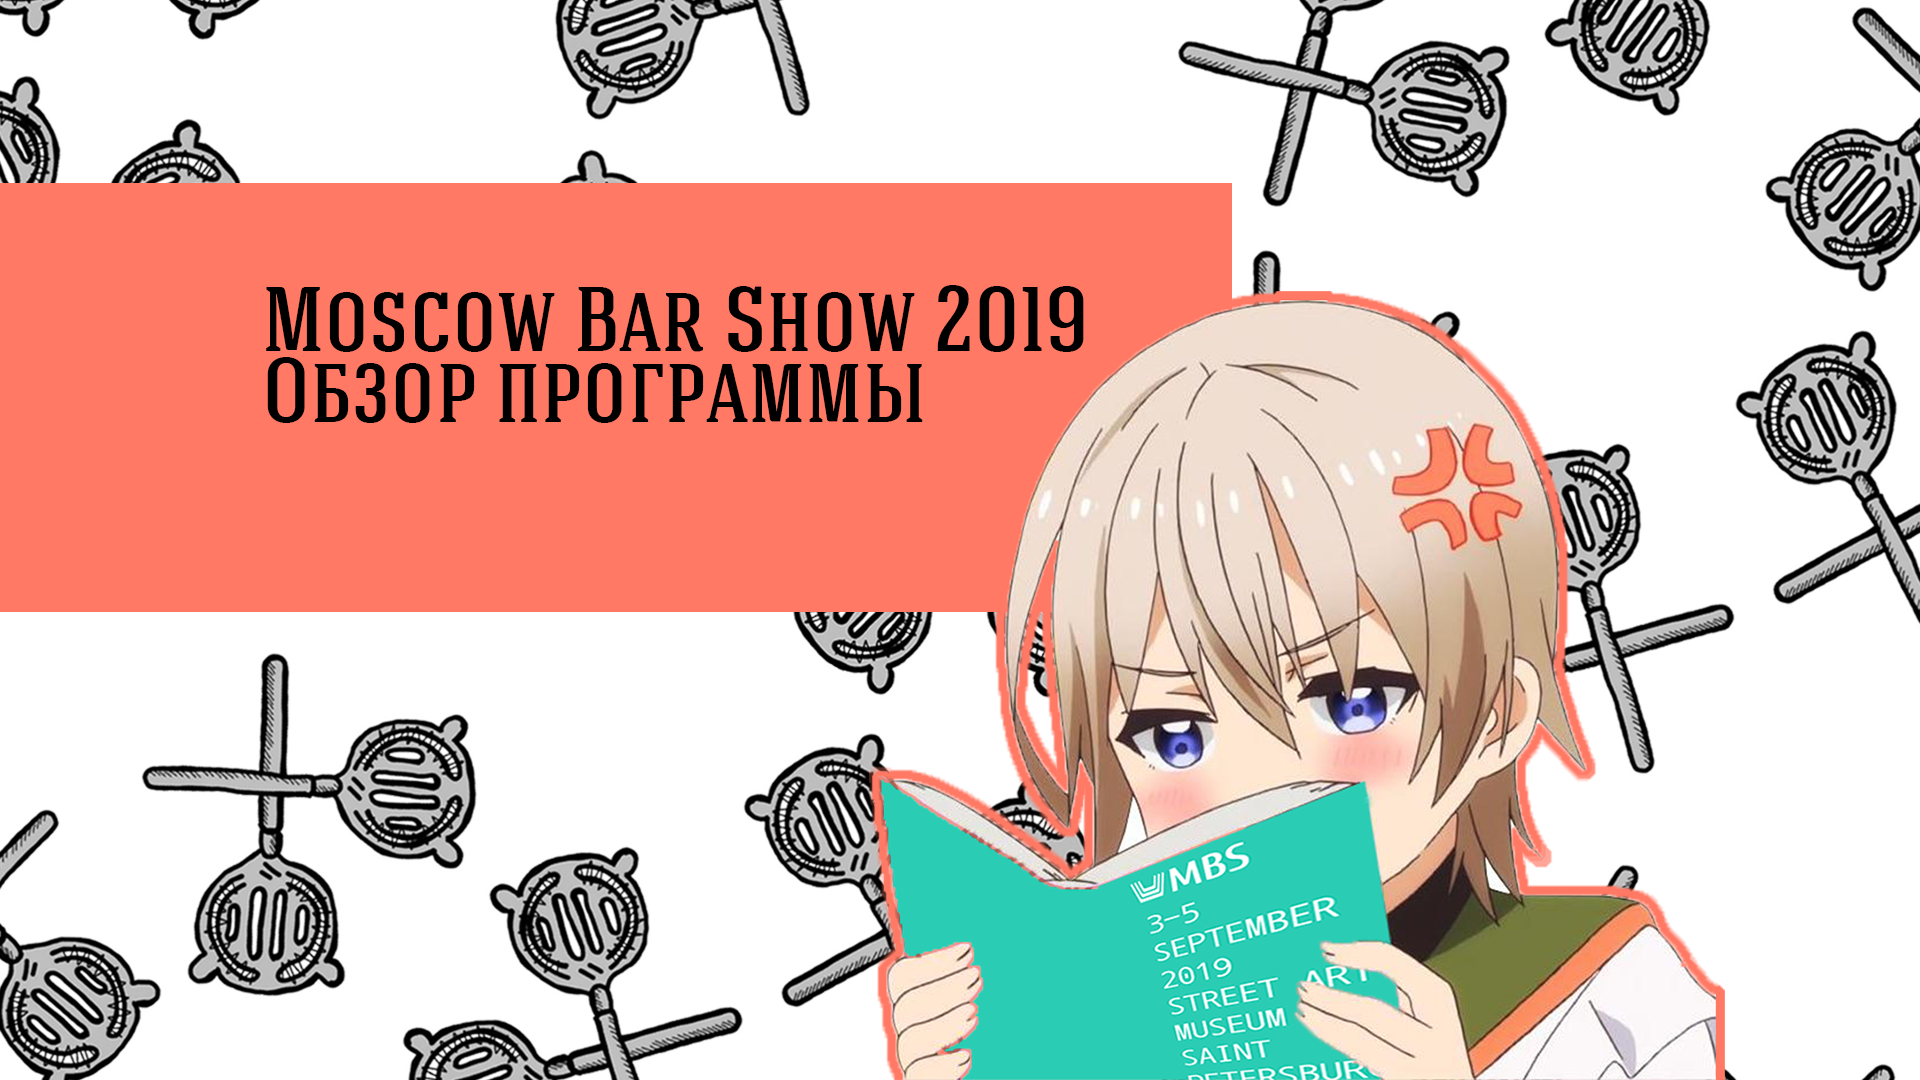 Обзор программы Moscow Bar Show 2019.